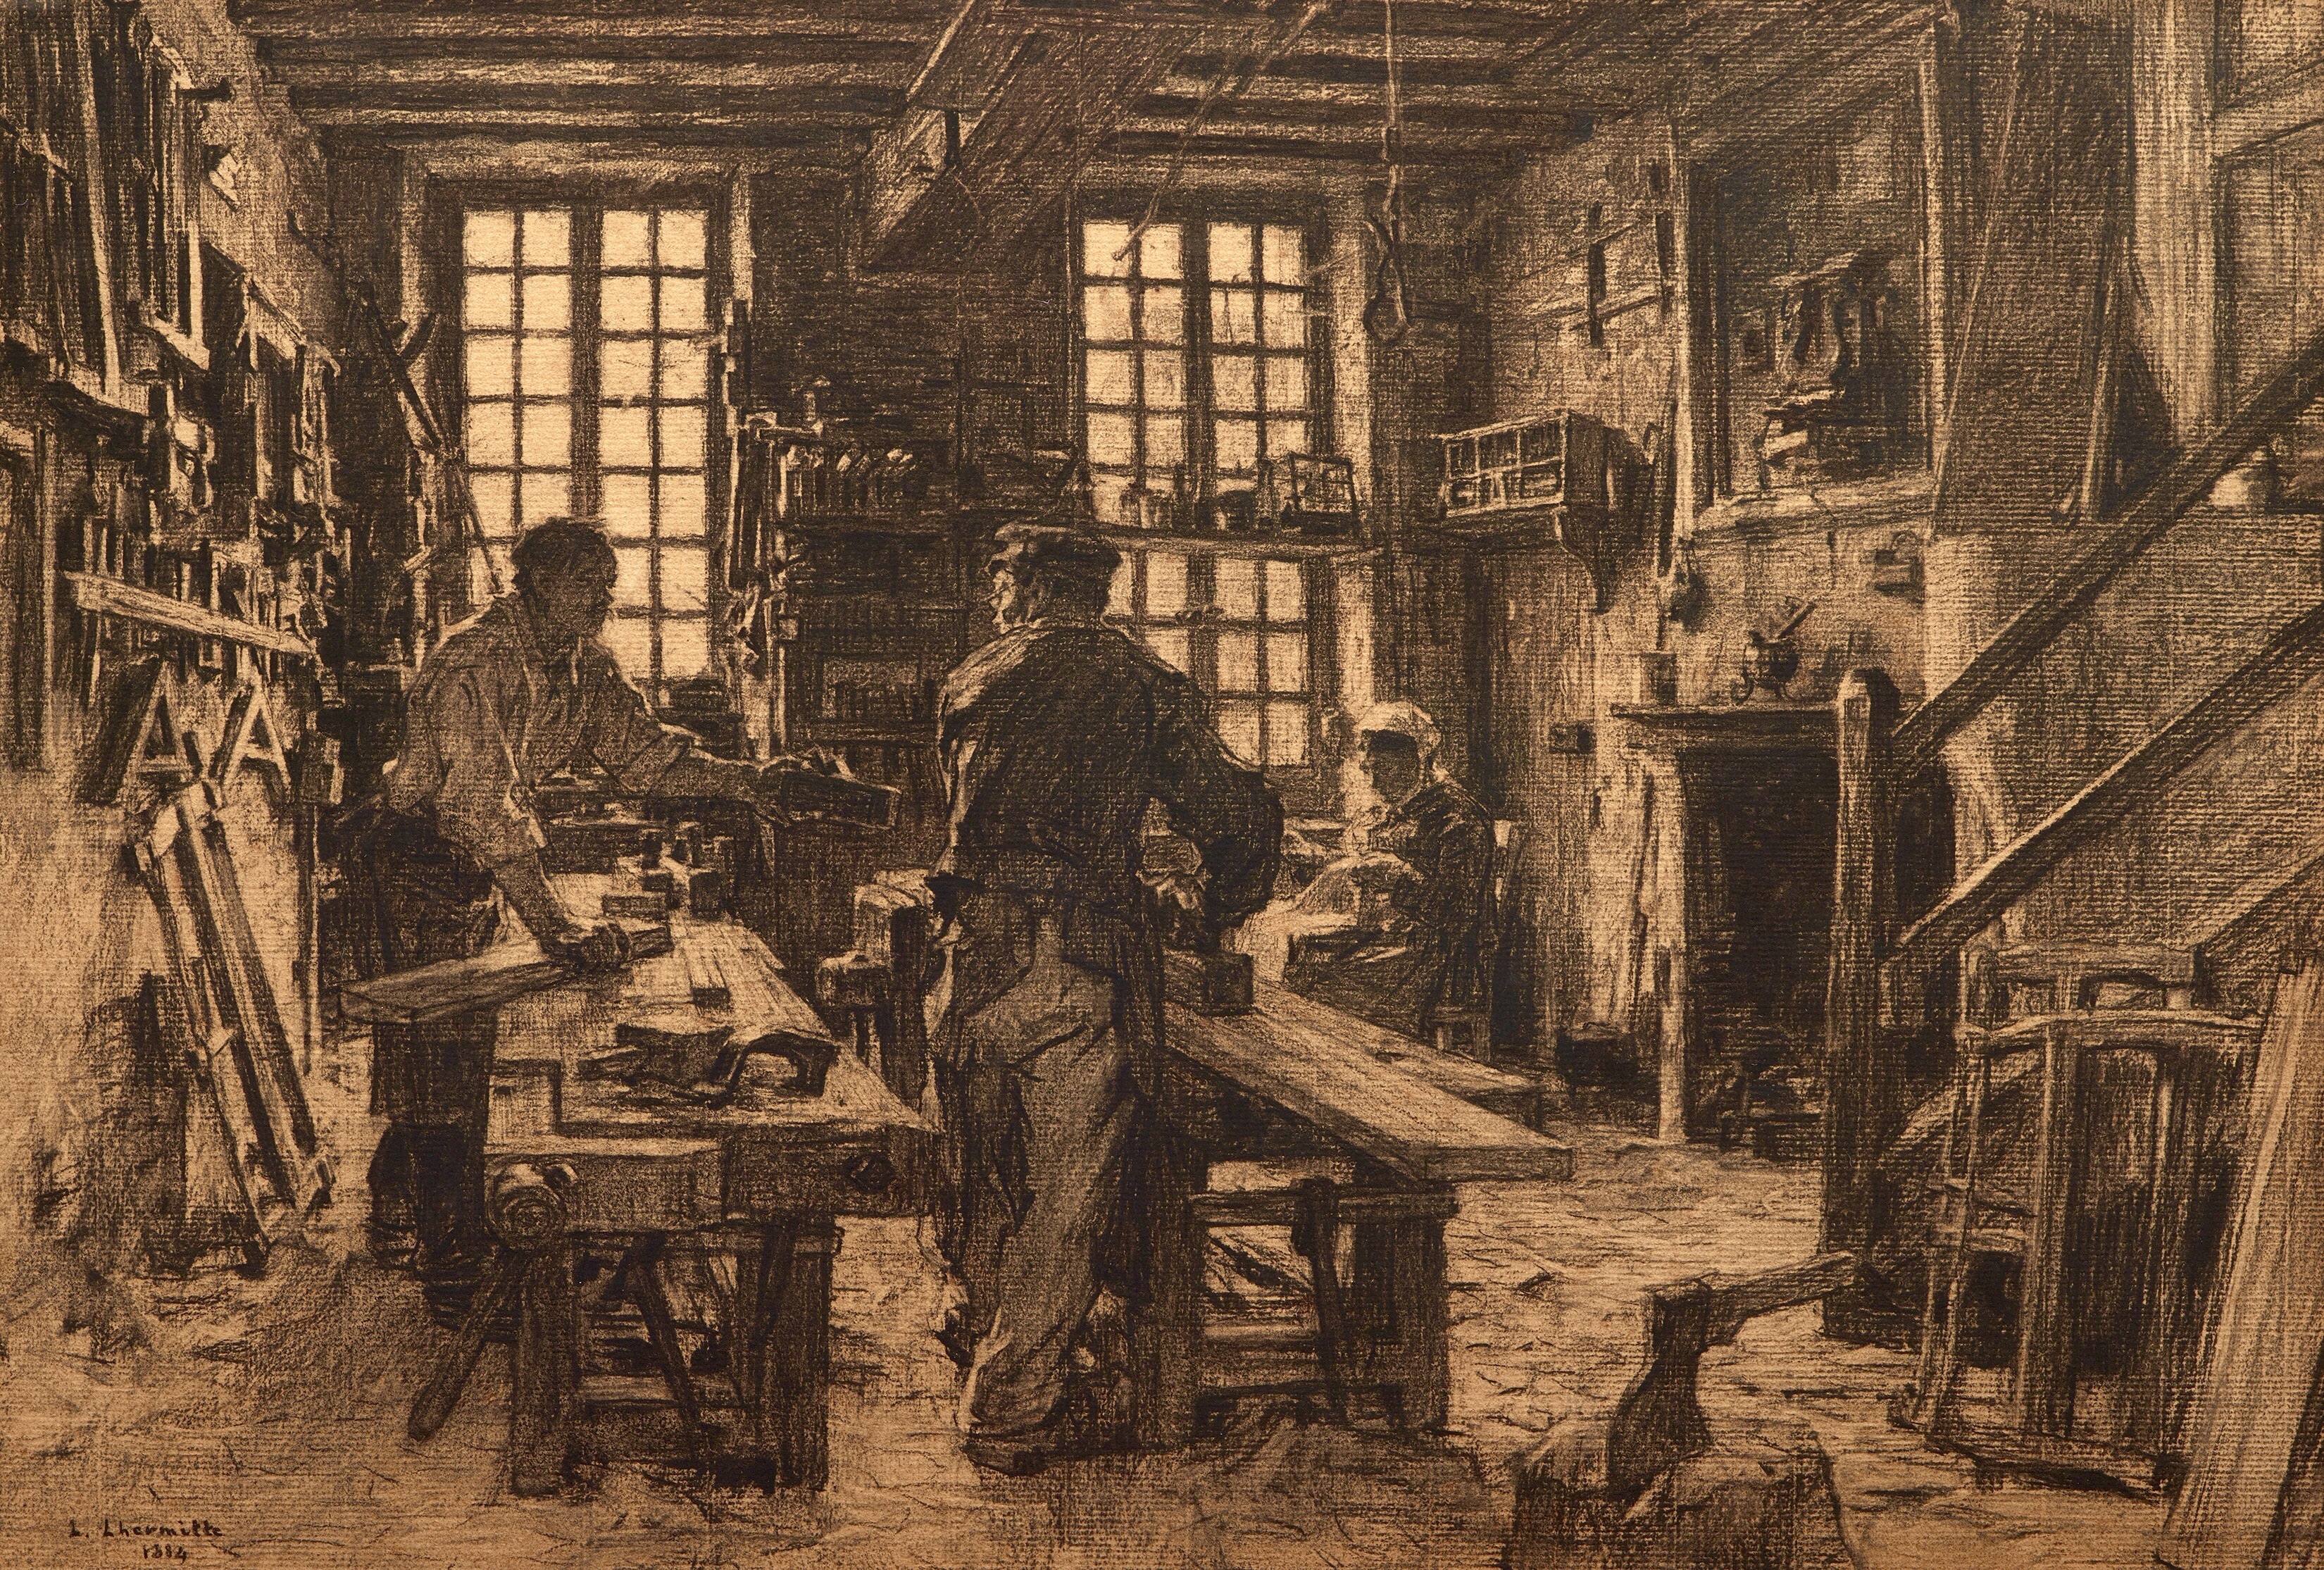 The Carpenter's Workshop by Leon Augustin Lhermitte (1887).